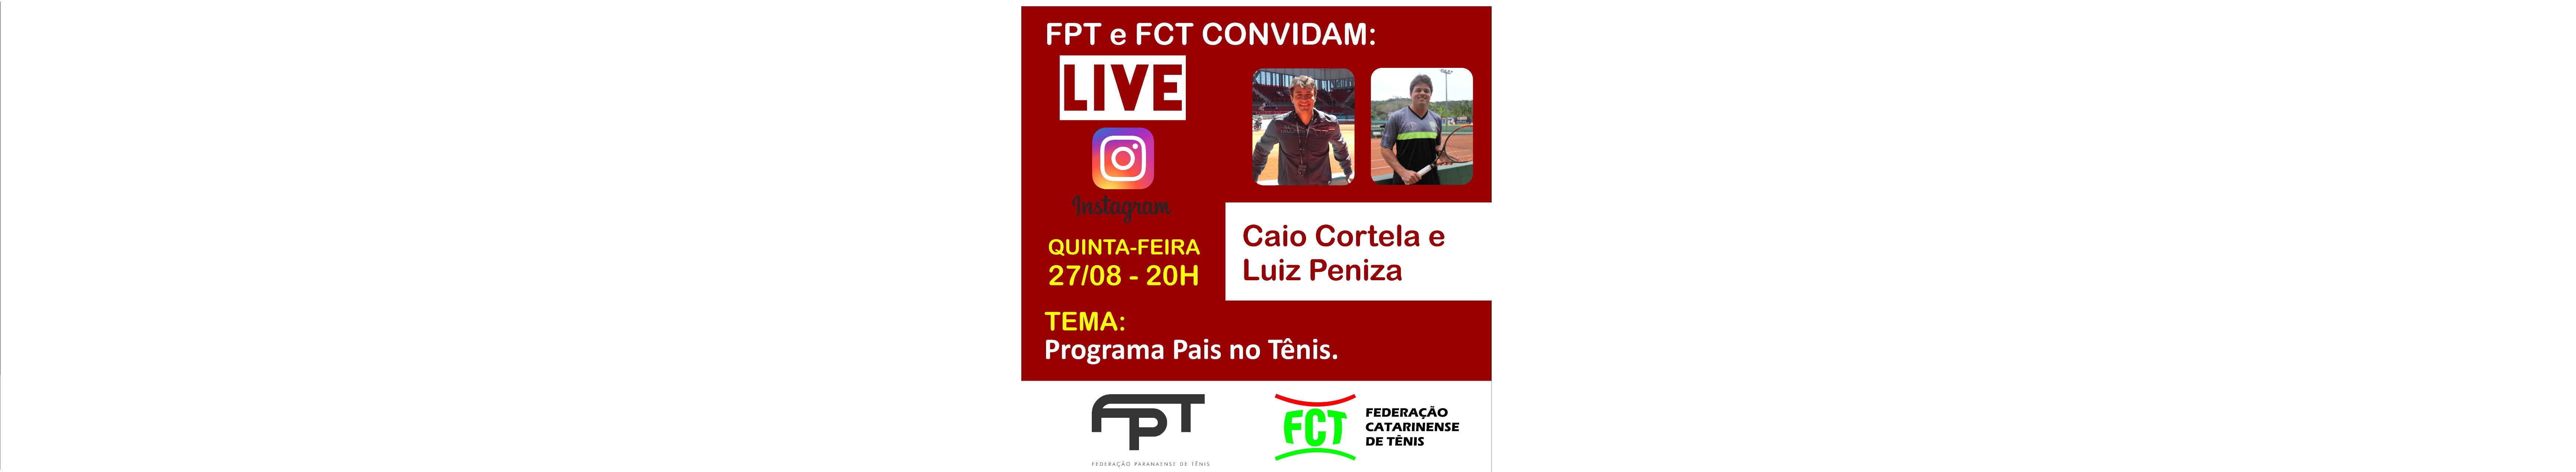 LIVE FPT E FCT - PROJETO DE DESENVOLVIMENTO DE PAIS NO TÊNIS